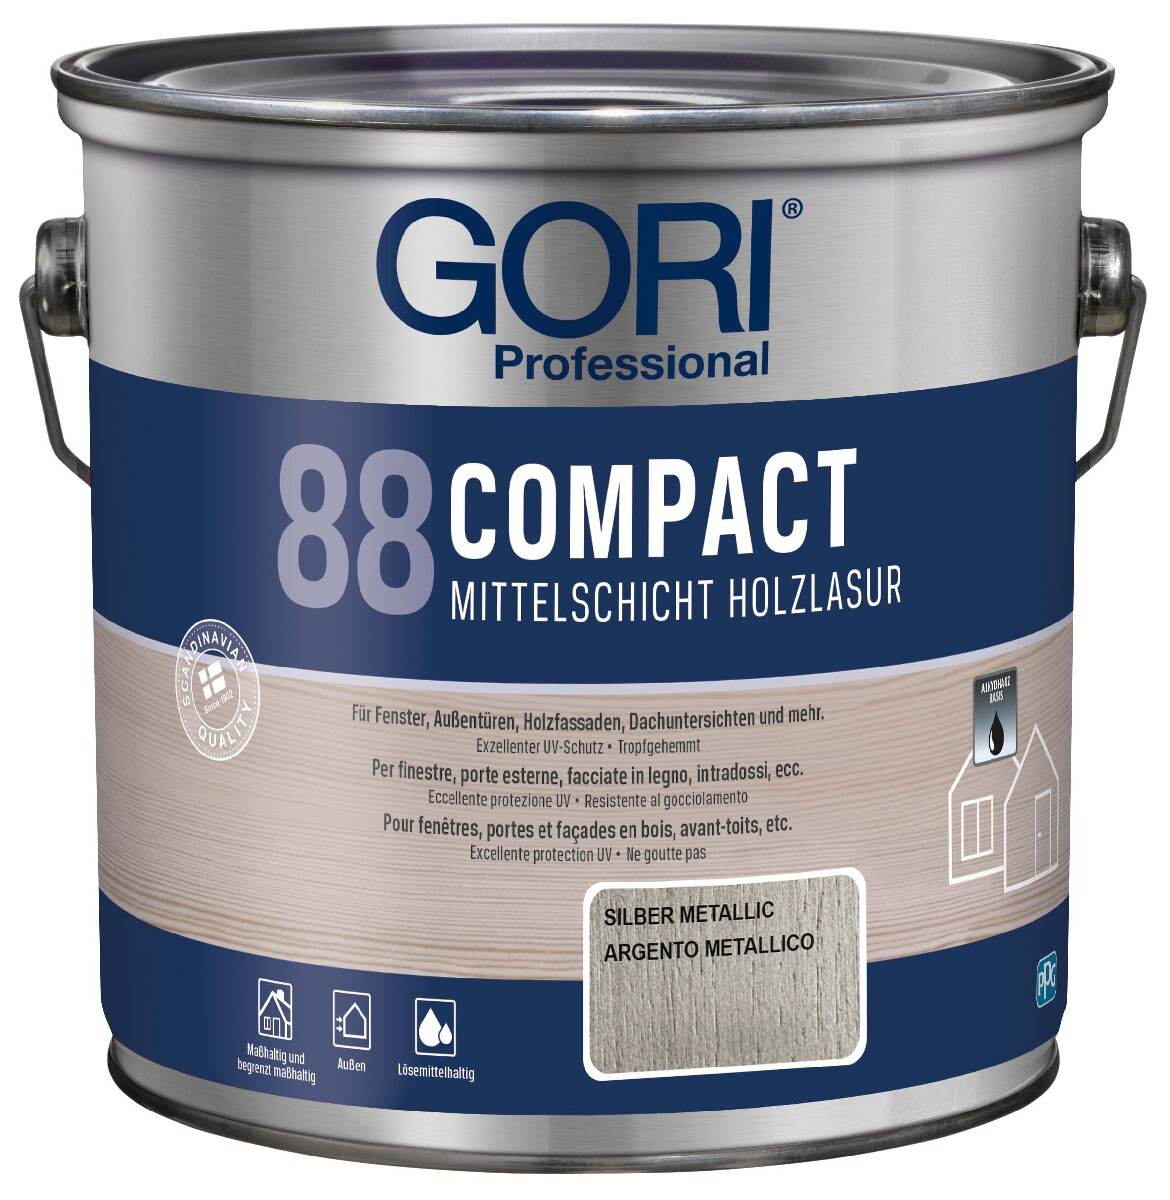 GORI 88 COMPACT Holzlasur 2,5 L in Silber Metallic, Mittelschicht-Lasur für Außen mit UV- und Wetterschutz